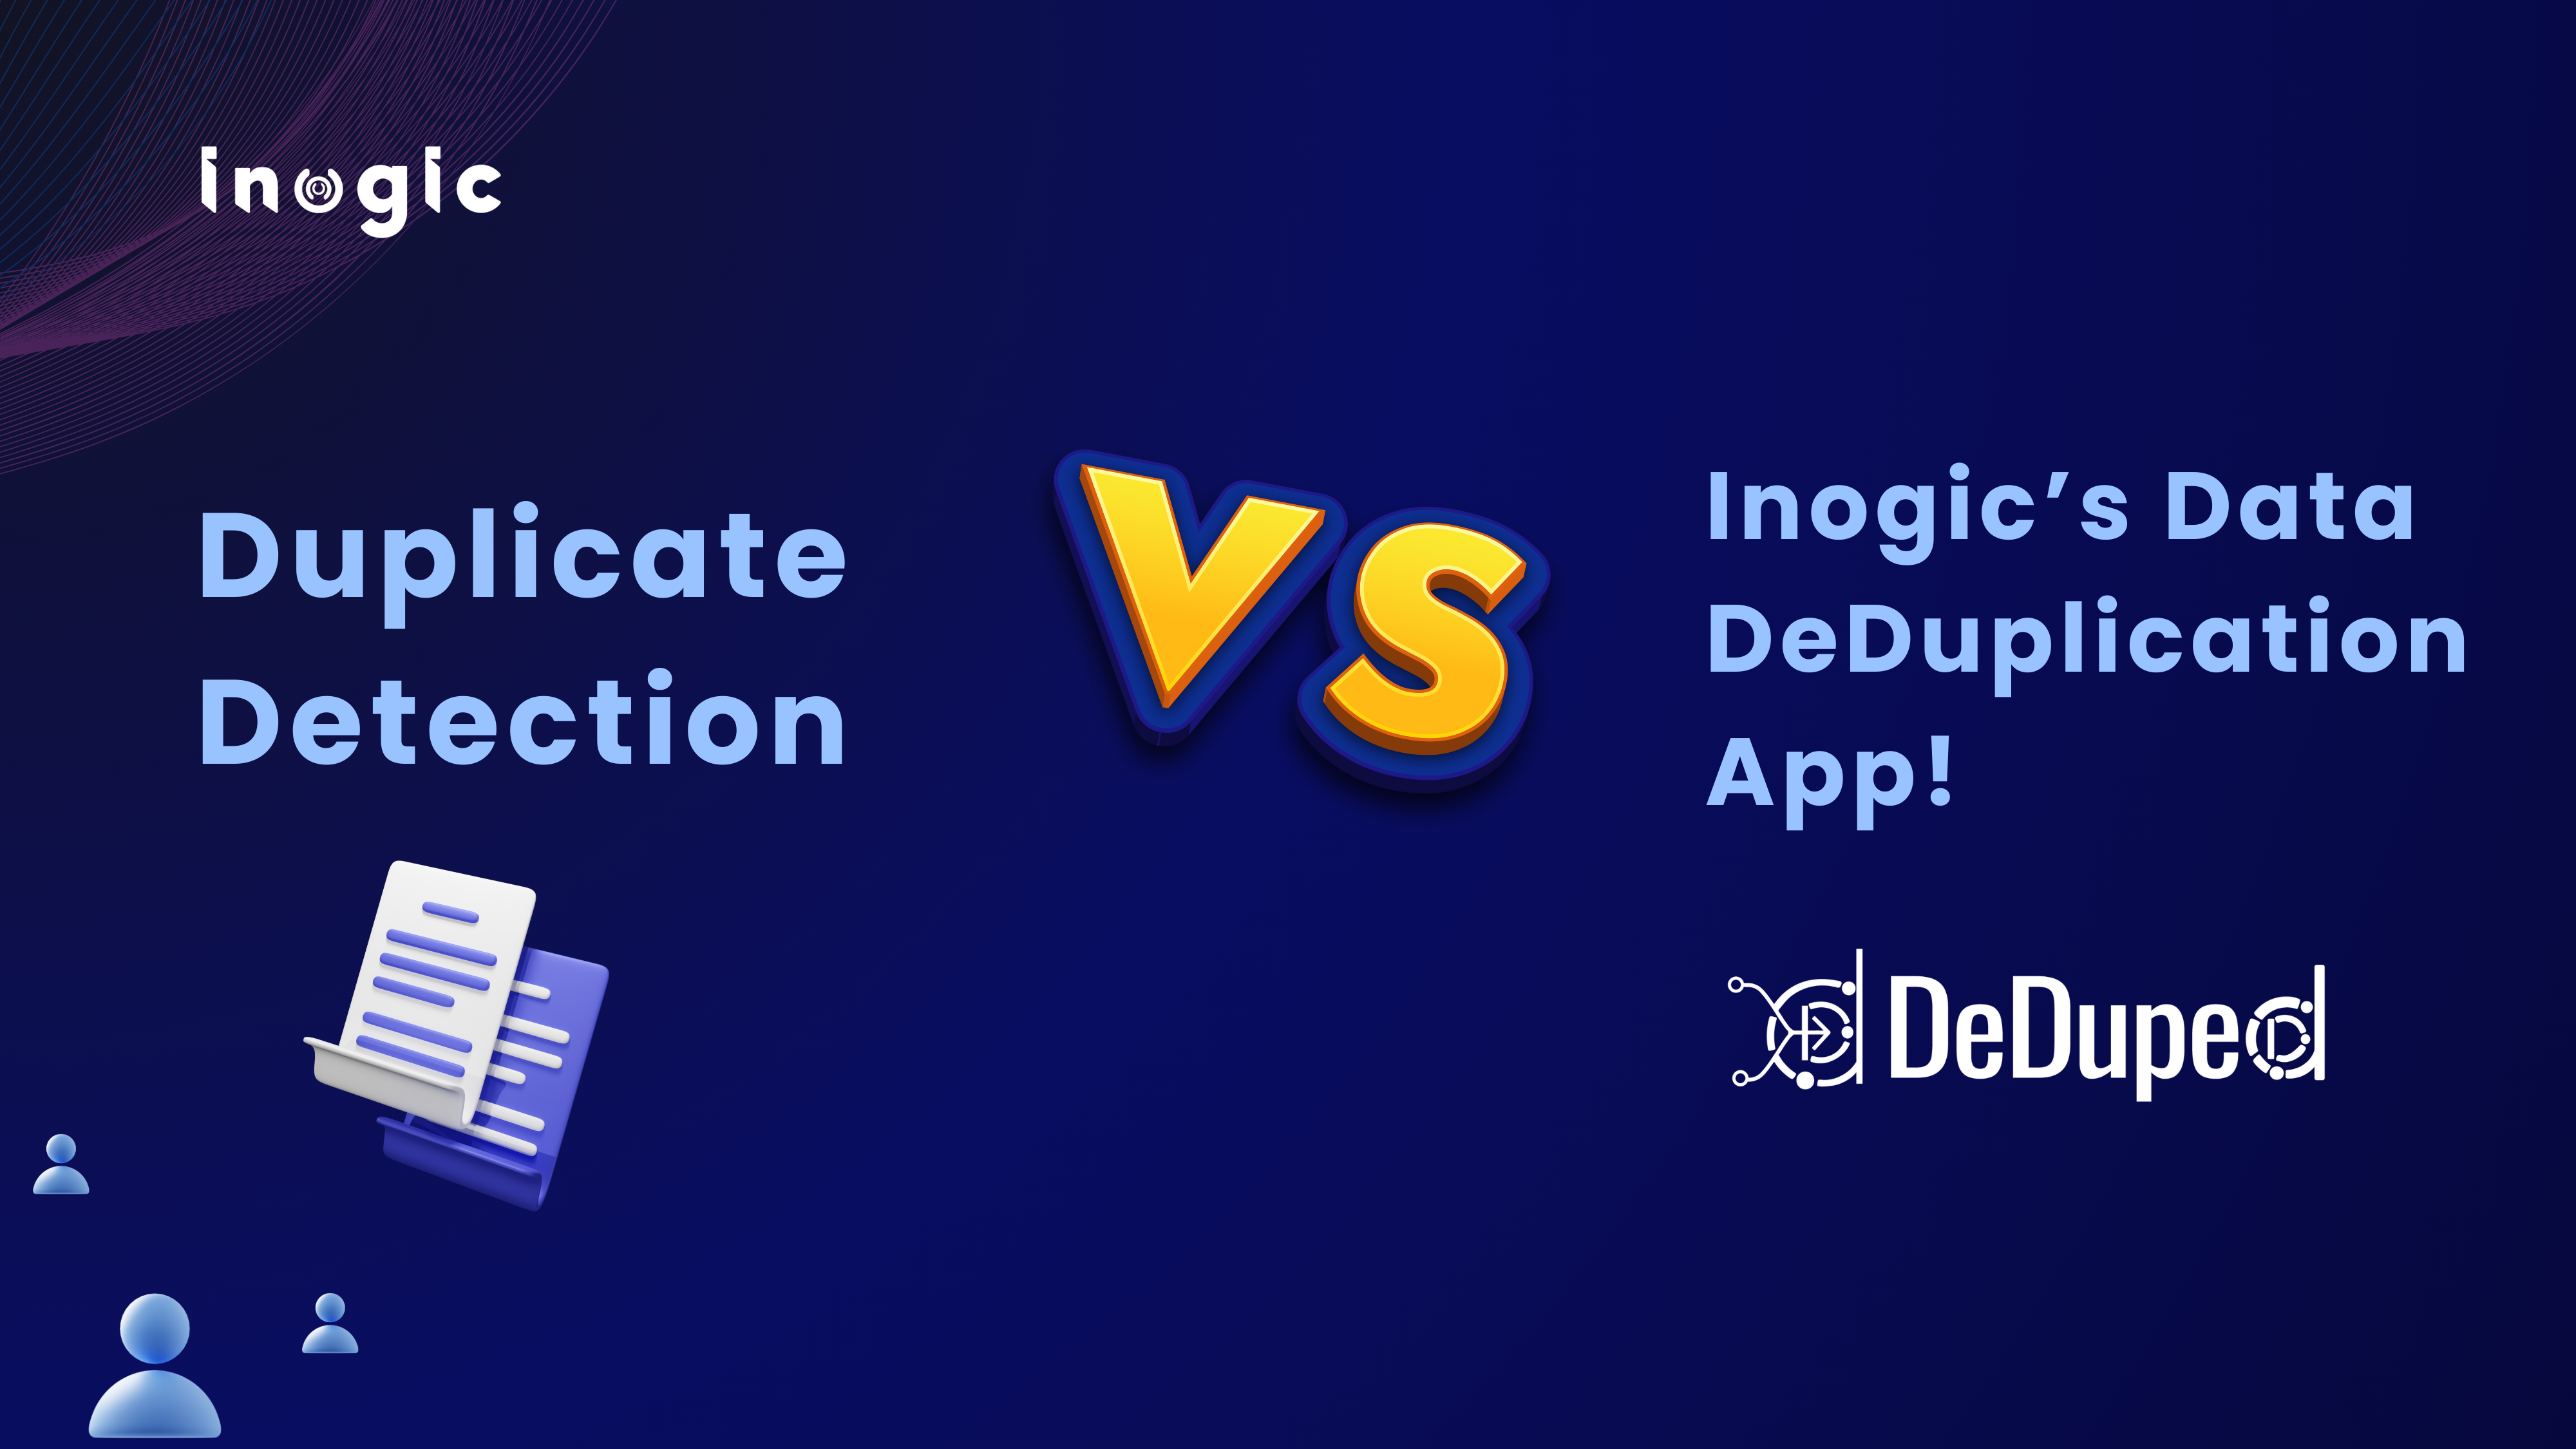 Duplicate Data Management in Dynamics 365 CRM – OOB Duplicate Detection vs Inogic’s Data DeDuplication App!